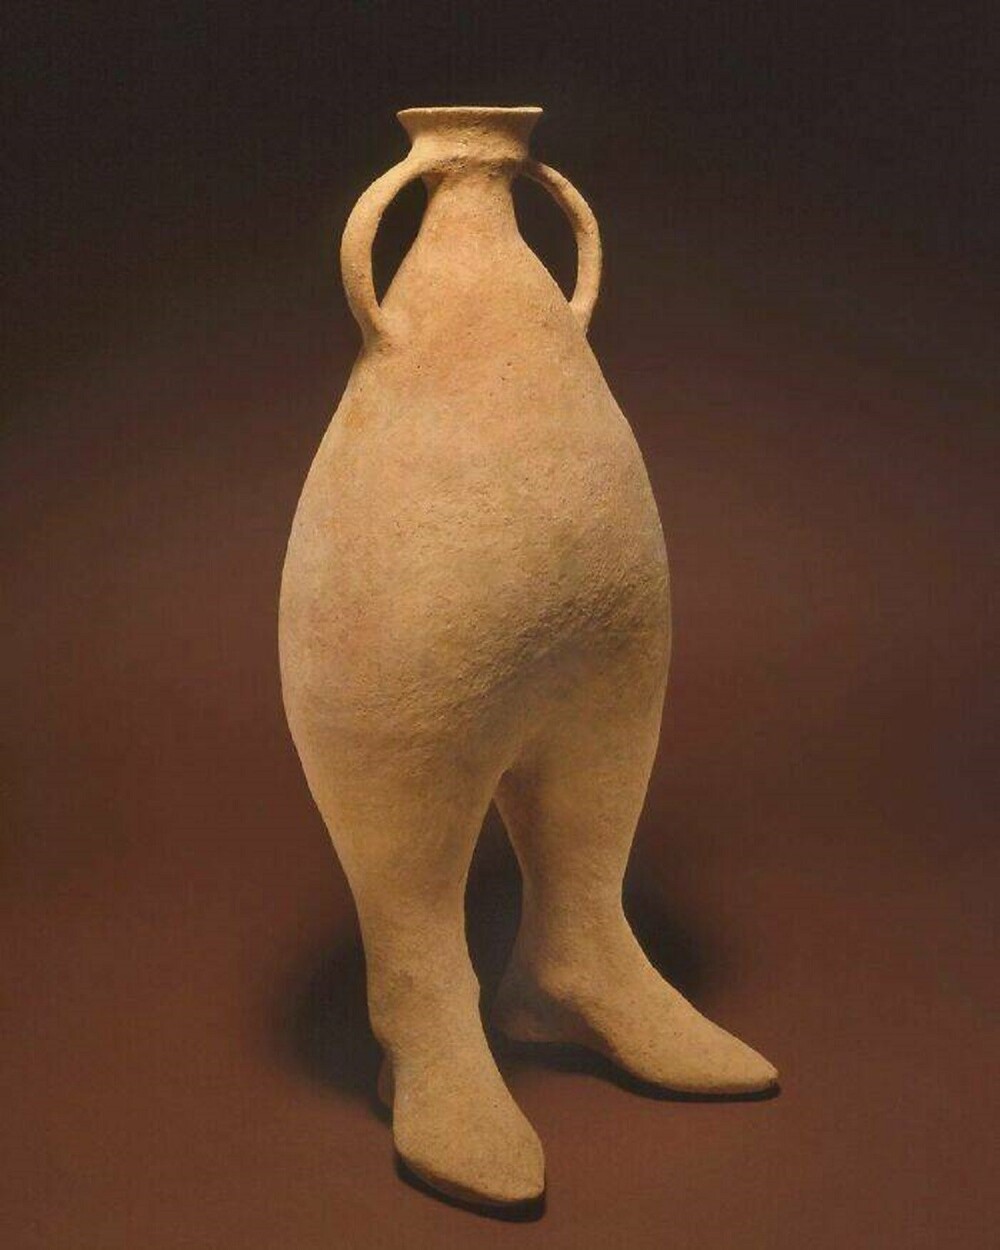 18. Ближневосточный глиняный сосуд с двумя ножками (1000—800 гг. до н. э.), из Северного Ирана